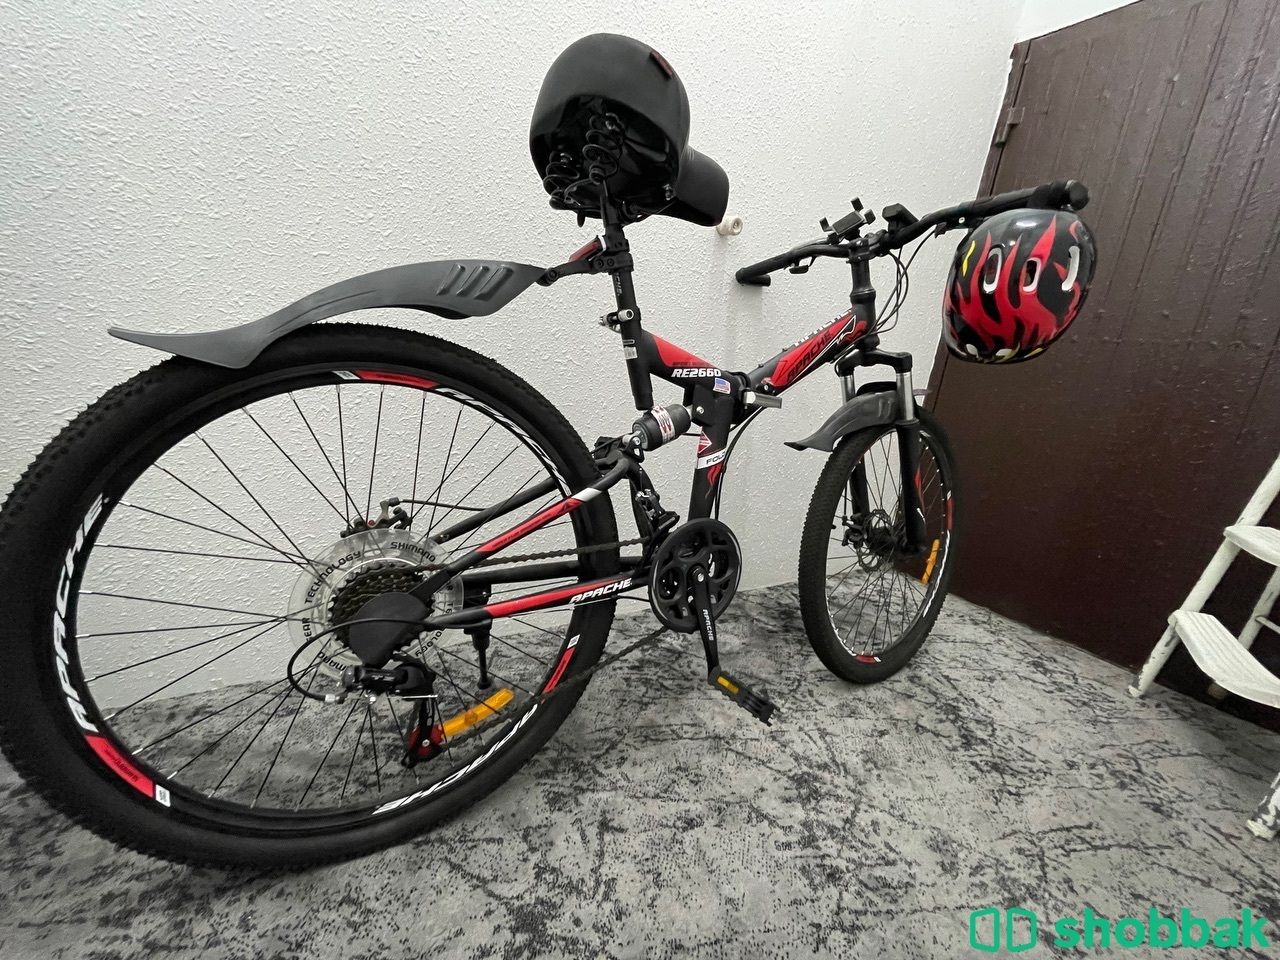 دراجه للبيع  Shobbak Saudi Arabia